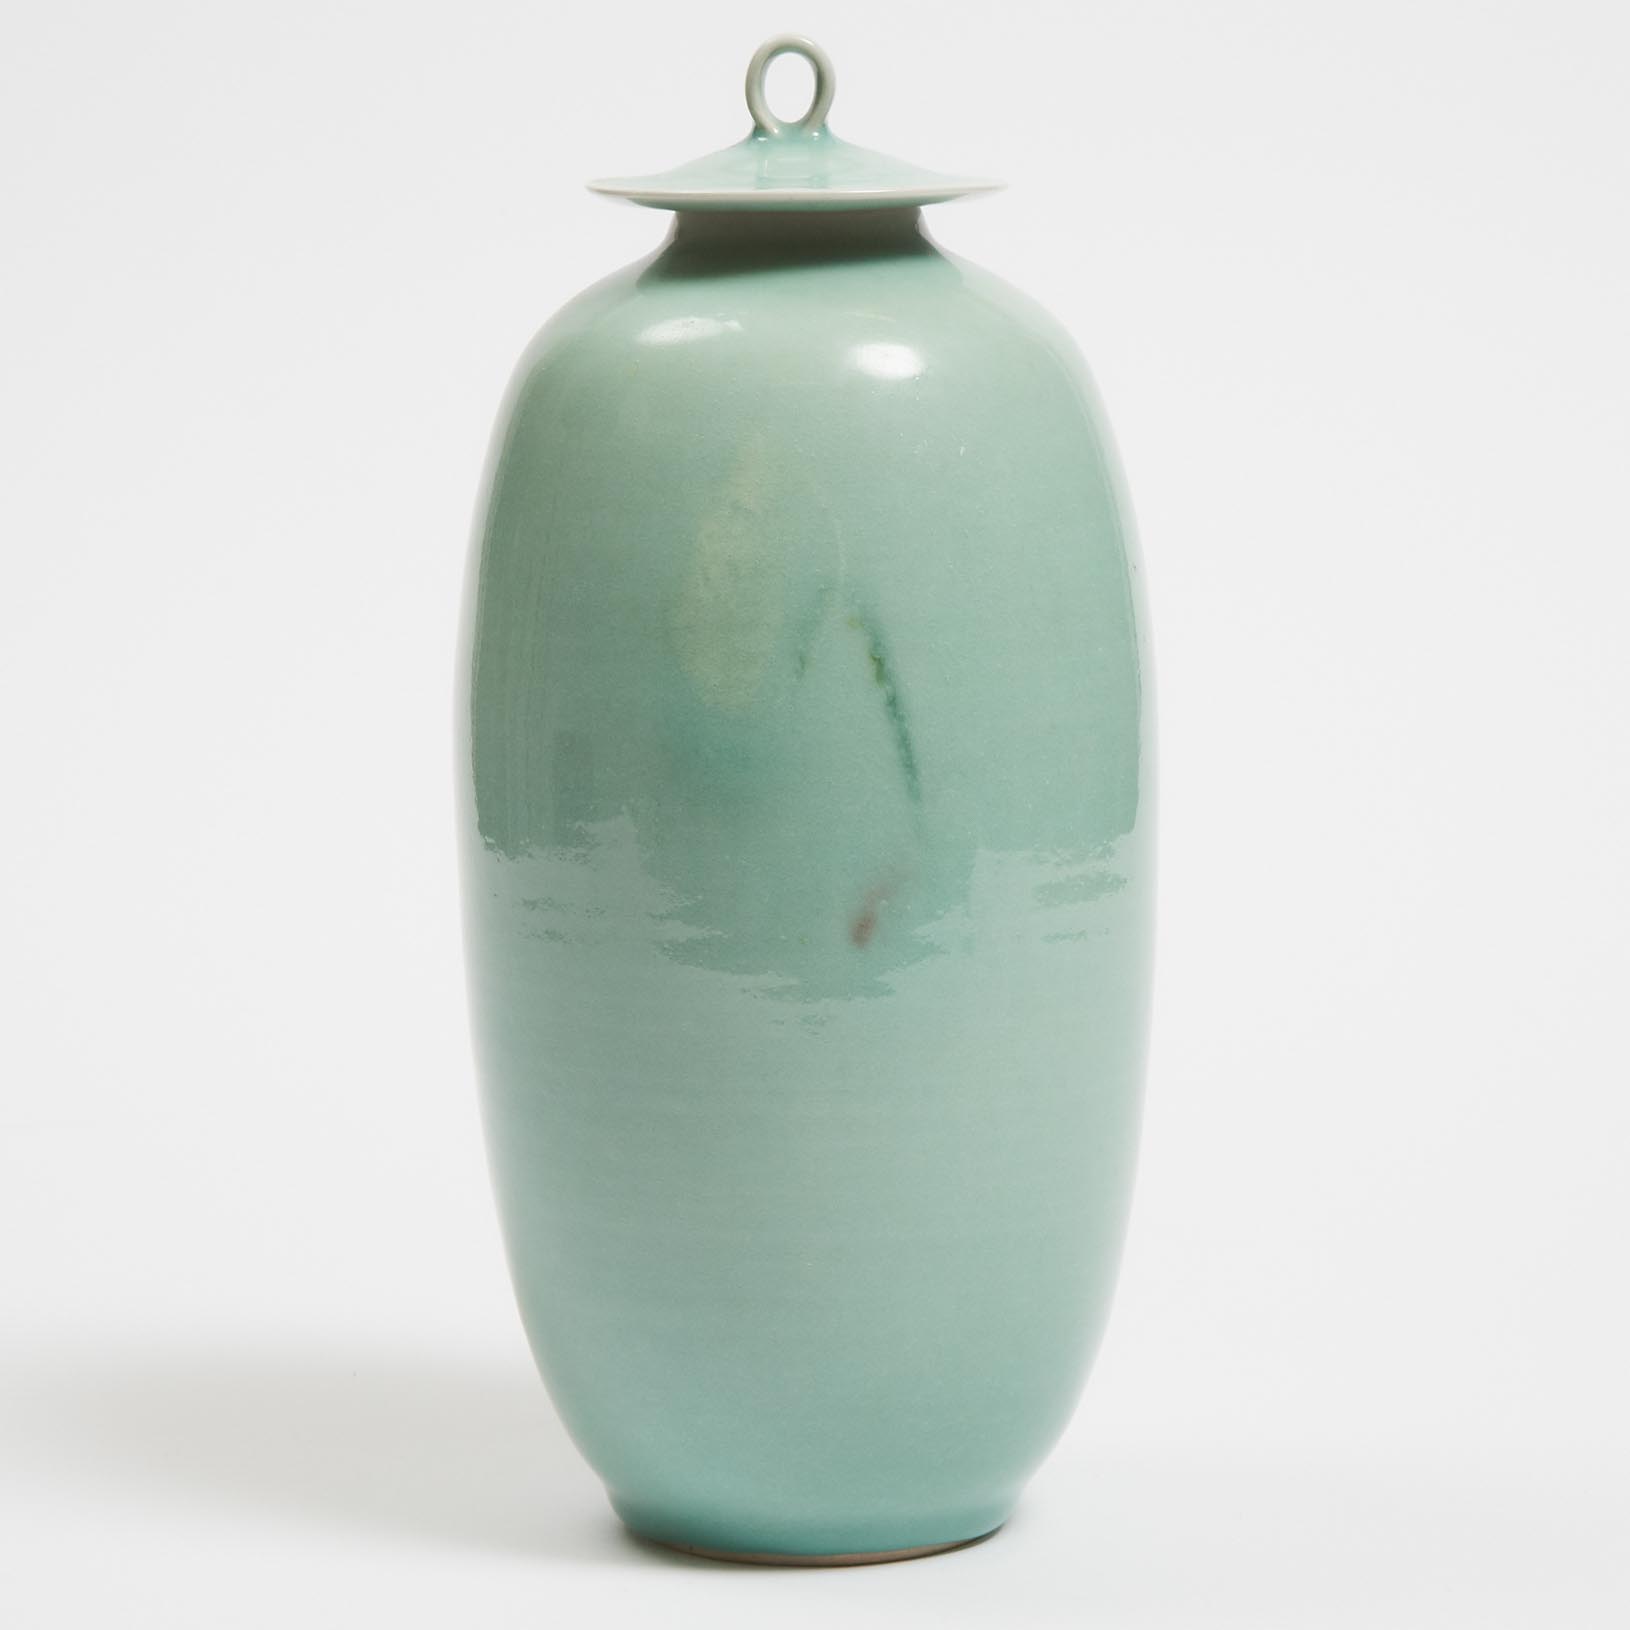 Kayo O'Young (Canadian, b.1950), Celadon Glazed Covered Vase, 2003